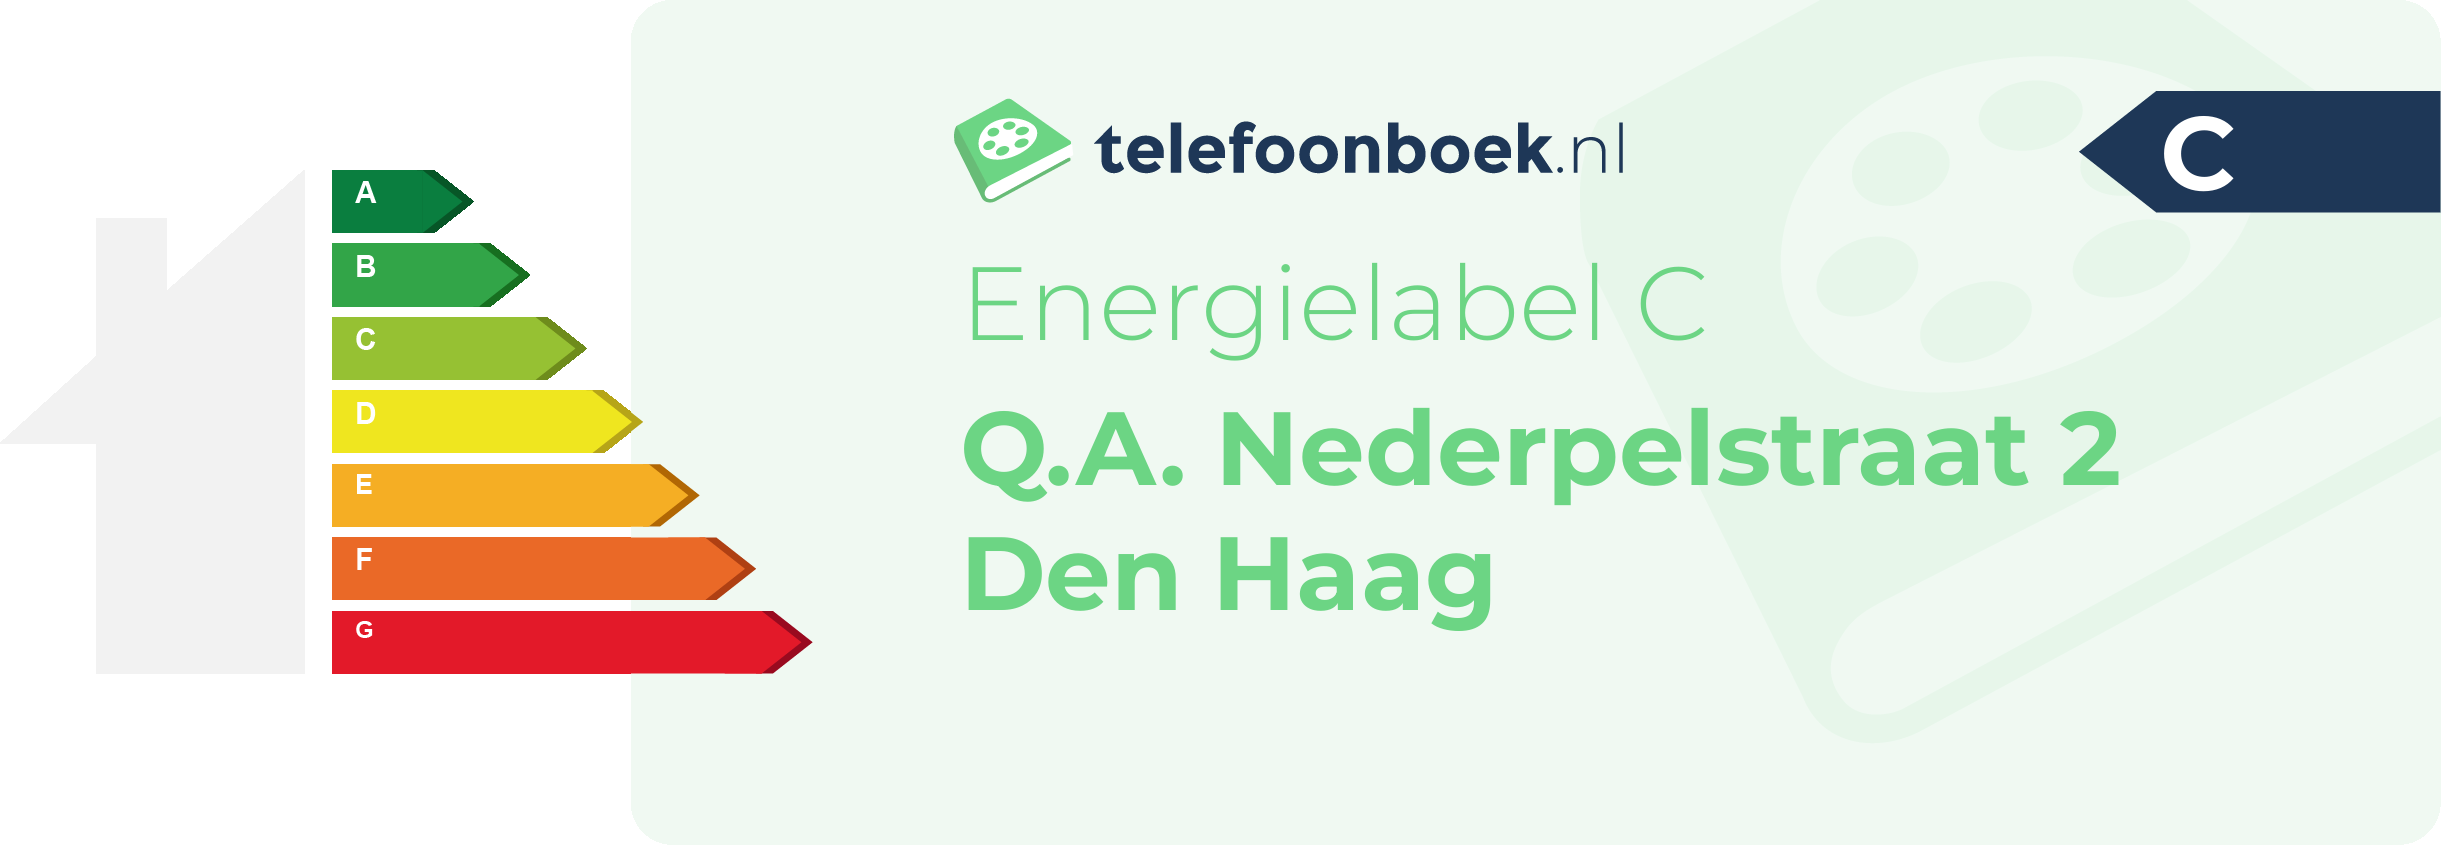 Energielabel Q.A. Nederpelstraat 2 Den Haag